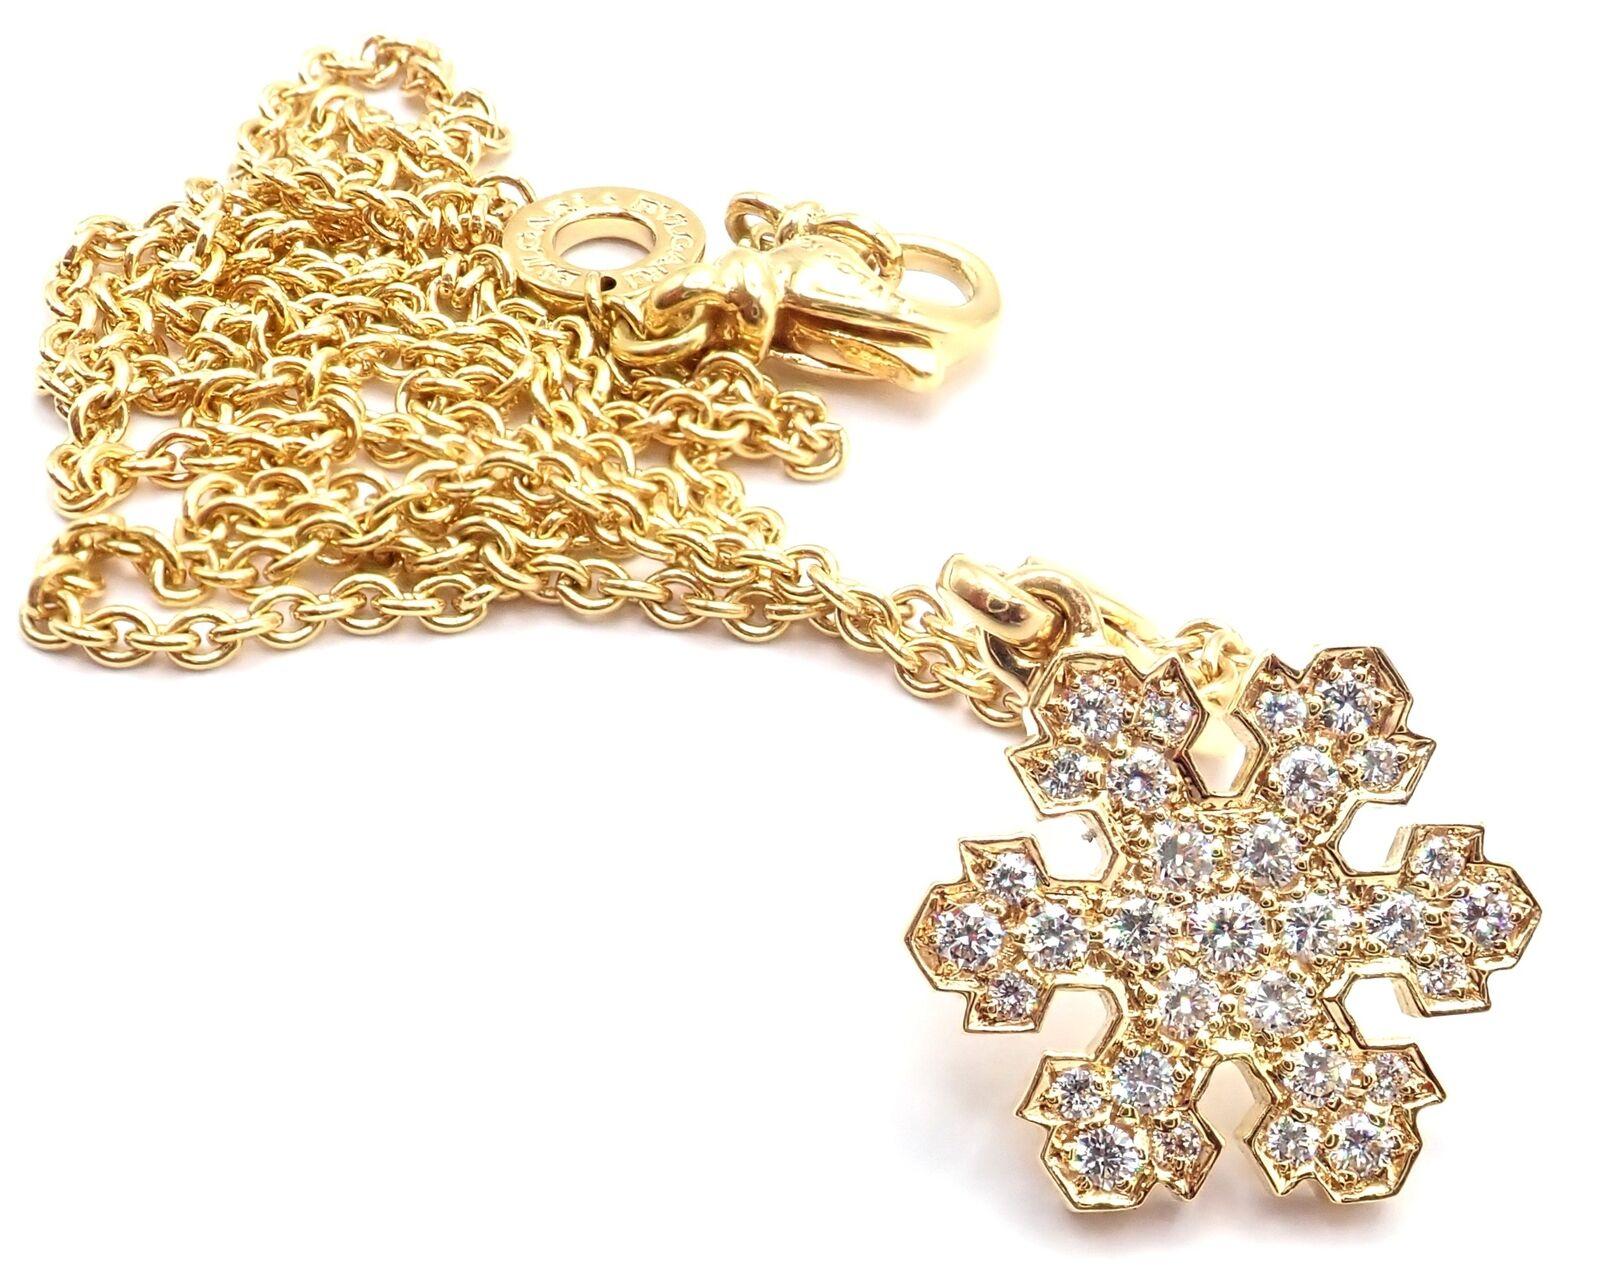 Brilliant Cut Bulgari Fiocco di Neve Snowflake Diamond Yellow Gold Pendant Necklace For Sale